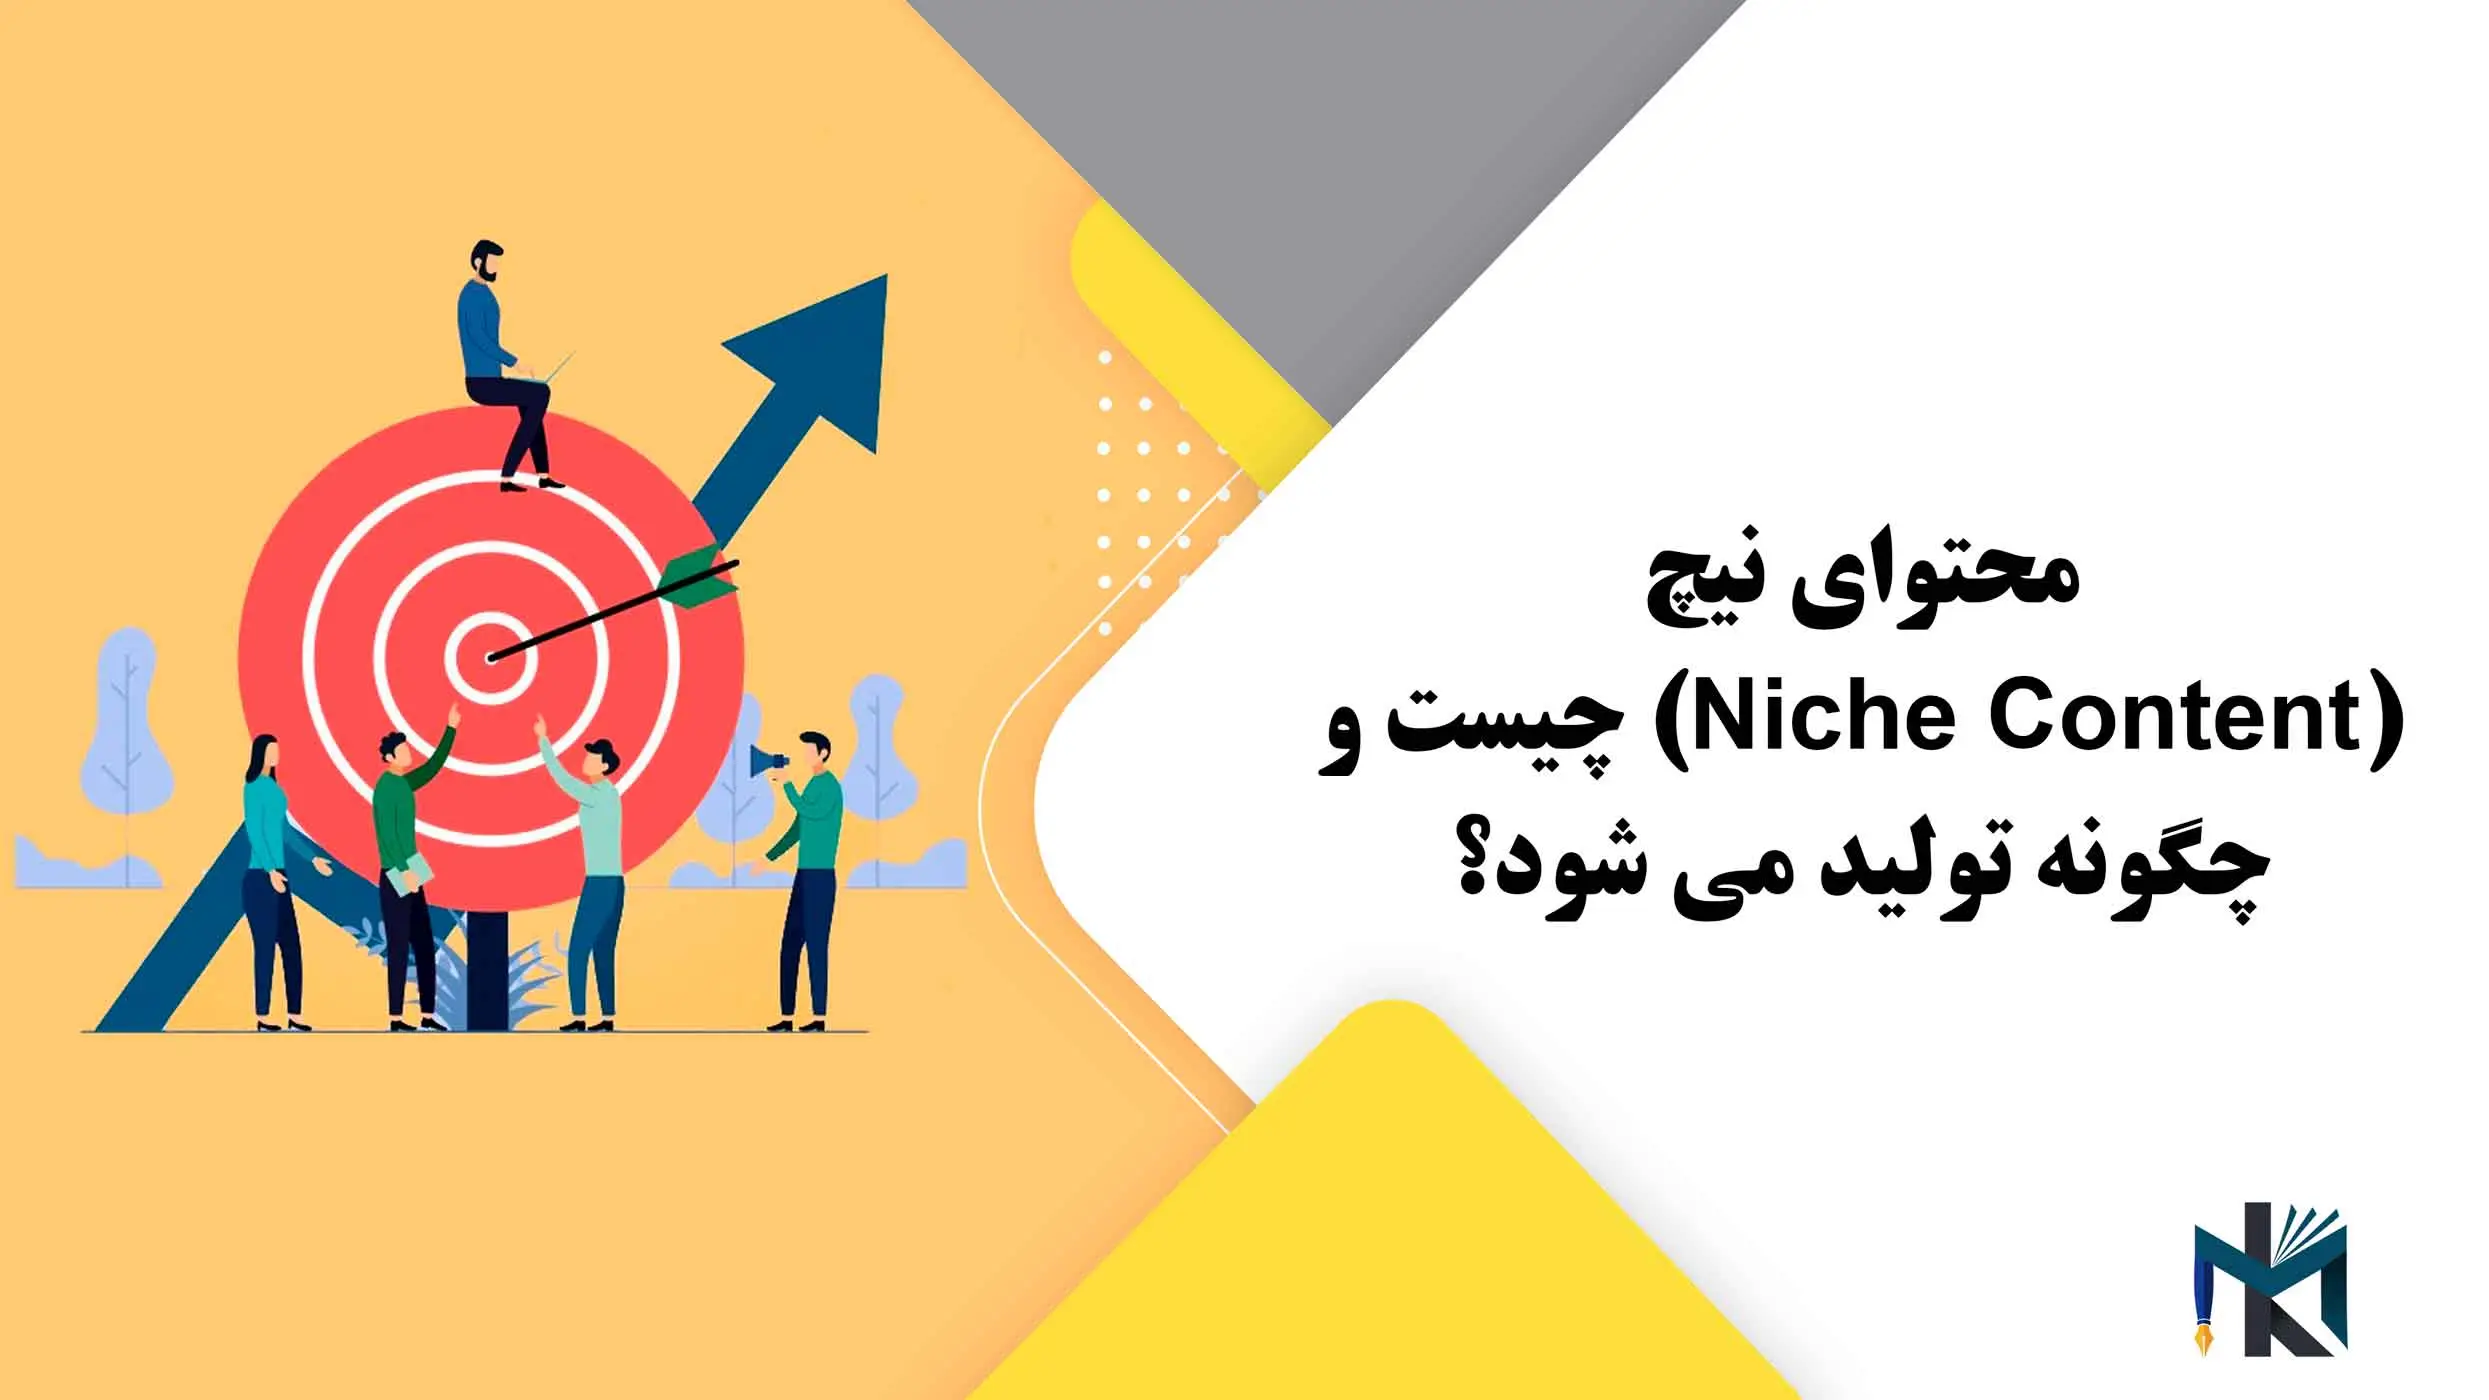 محتوای نیچ(Niche Content) چیست و چگونه تولید می شود؟